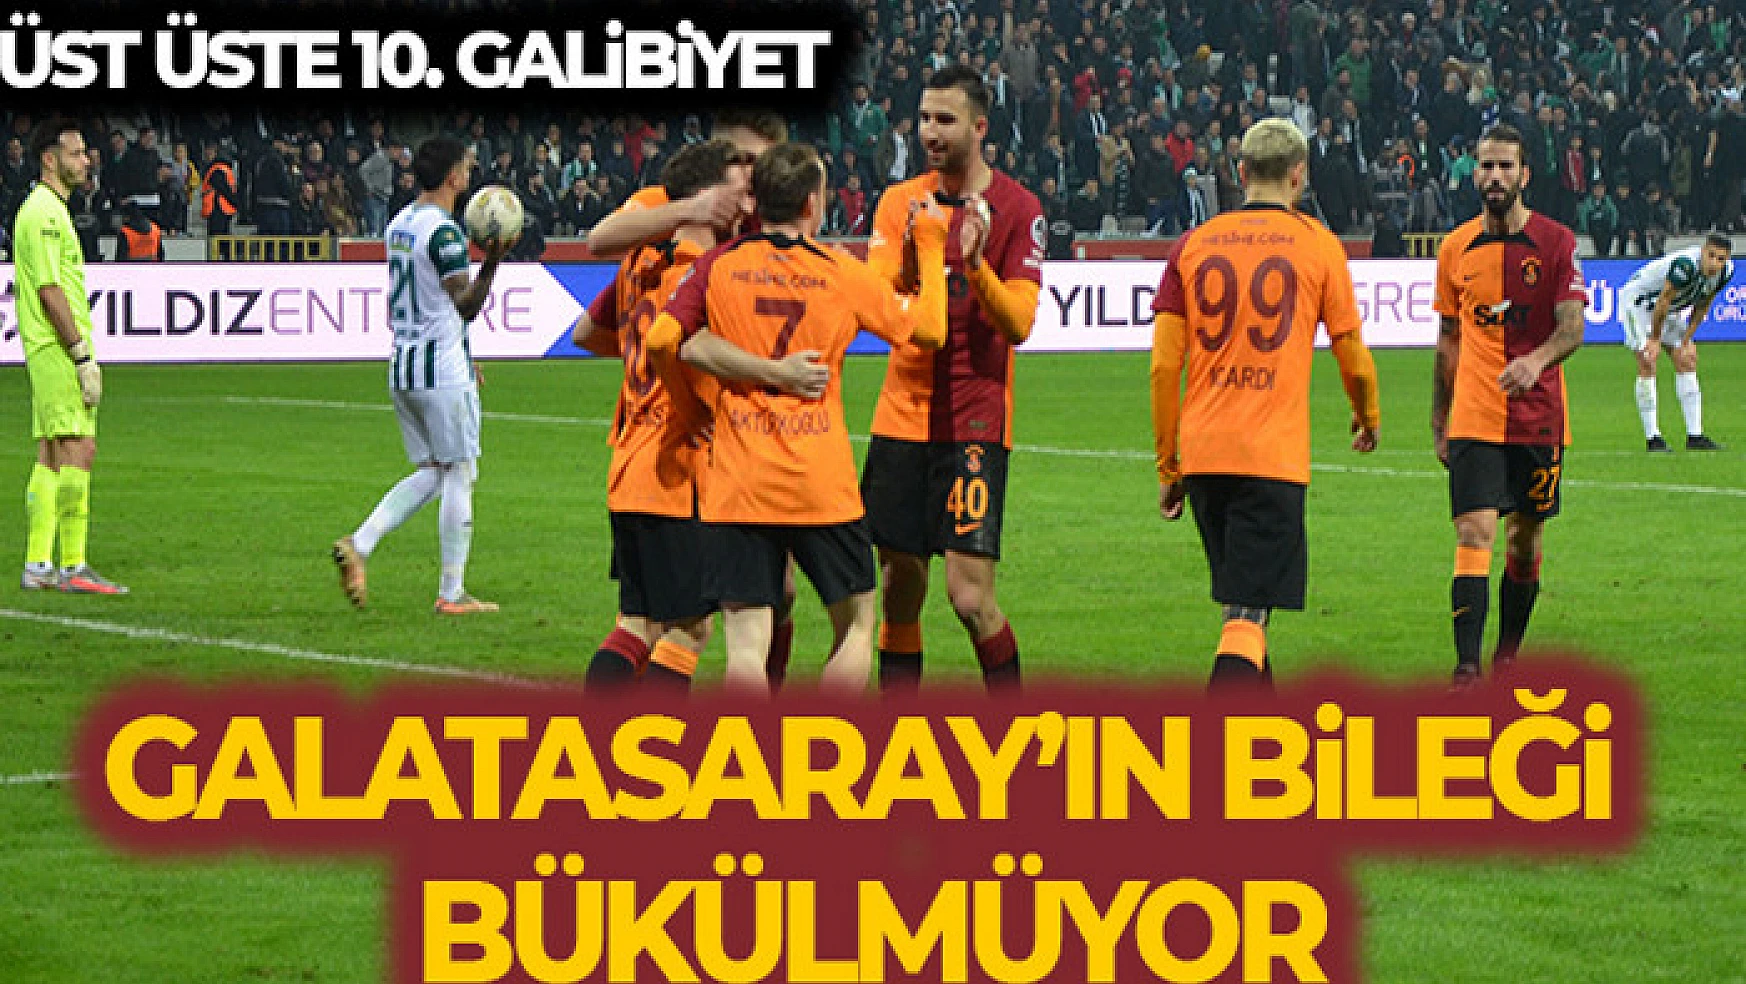 Galatasaray'ın bileği bükülmüyor